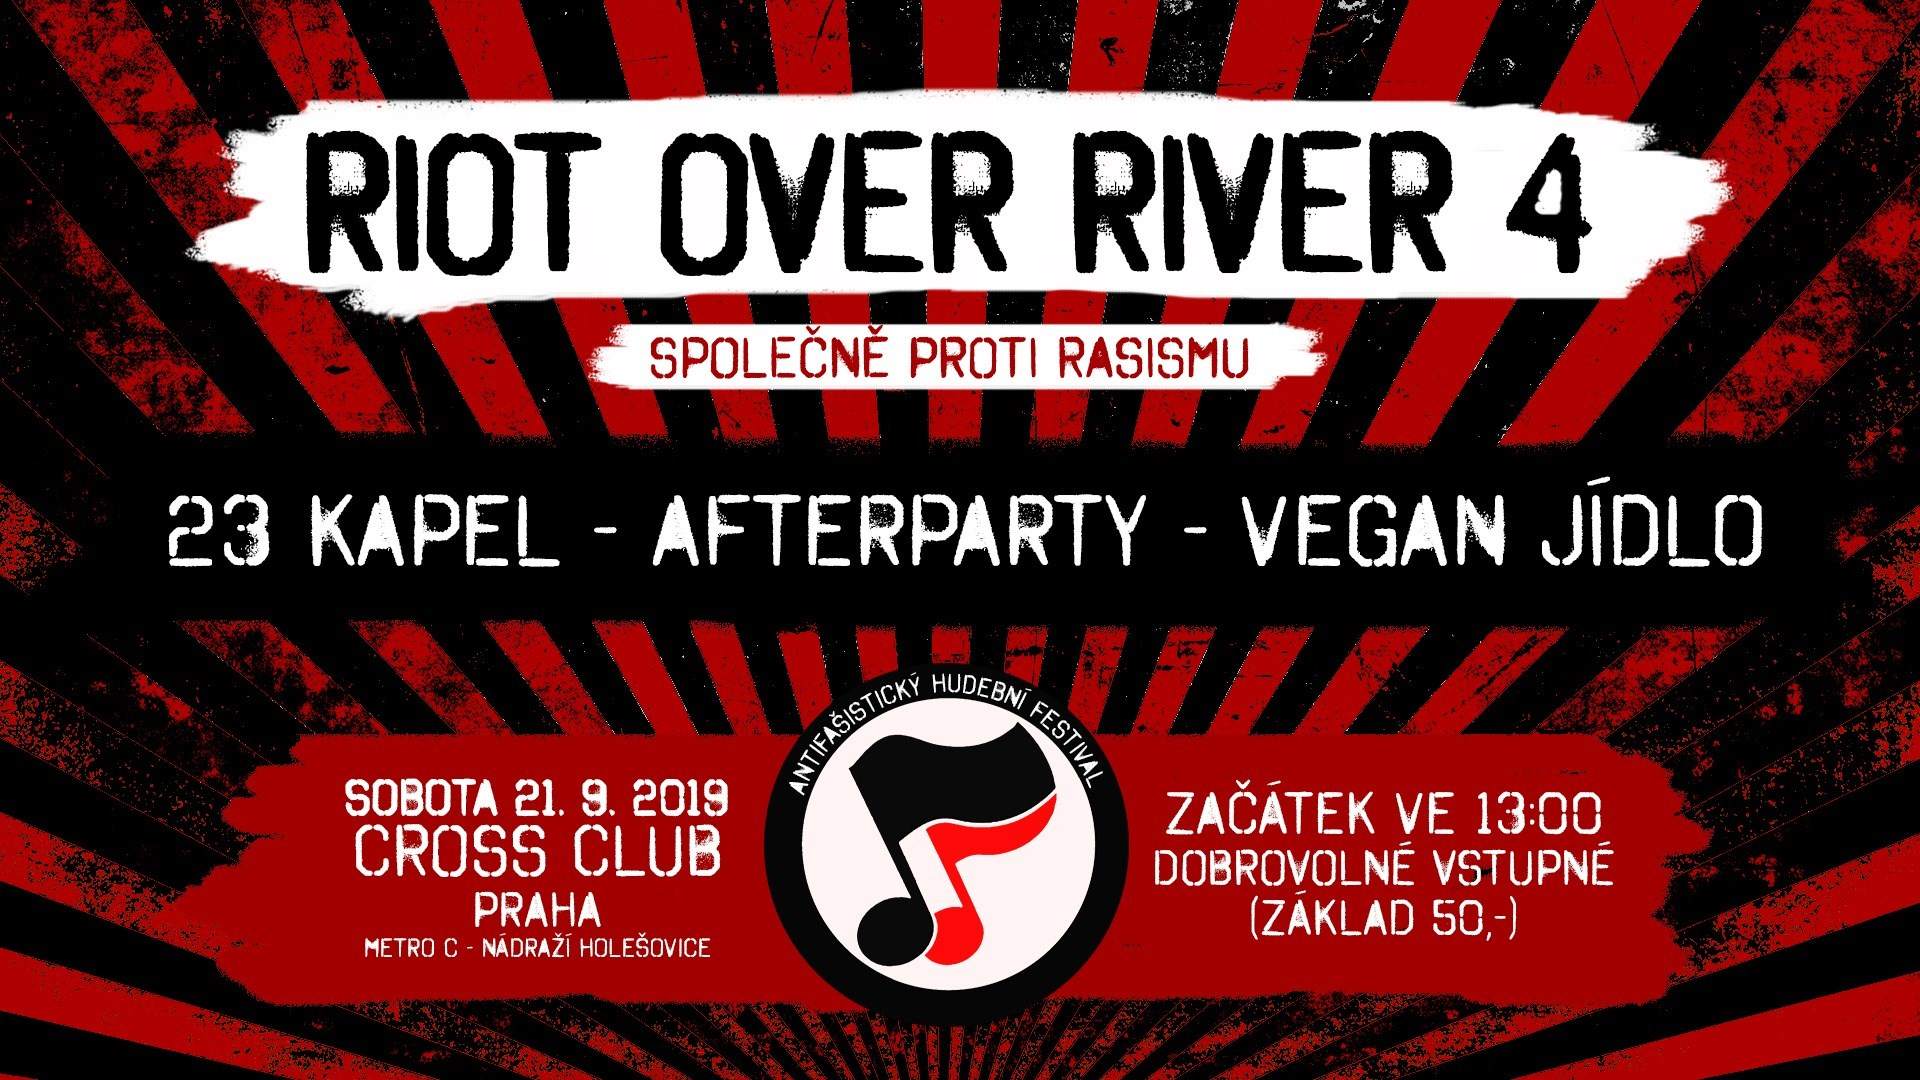 Riot Over River - Společně Proti Rasismu 4 - フライヤー裏